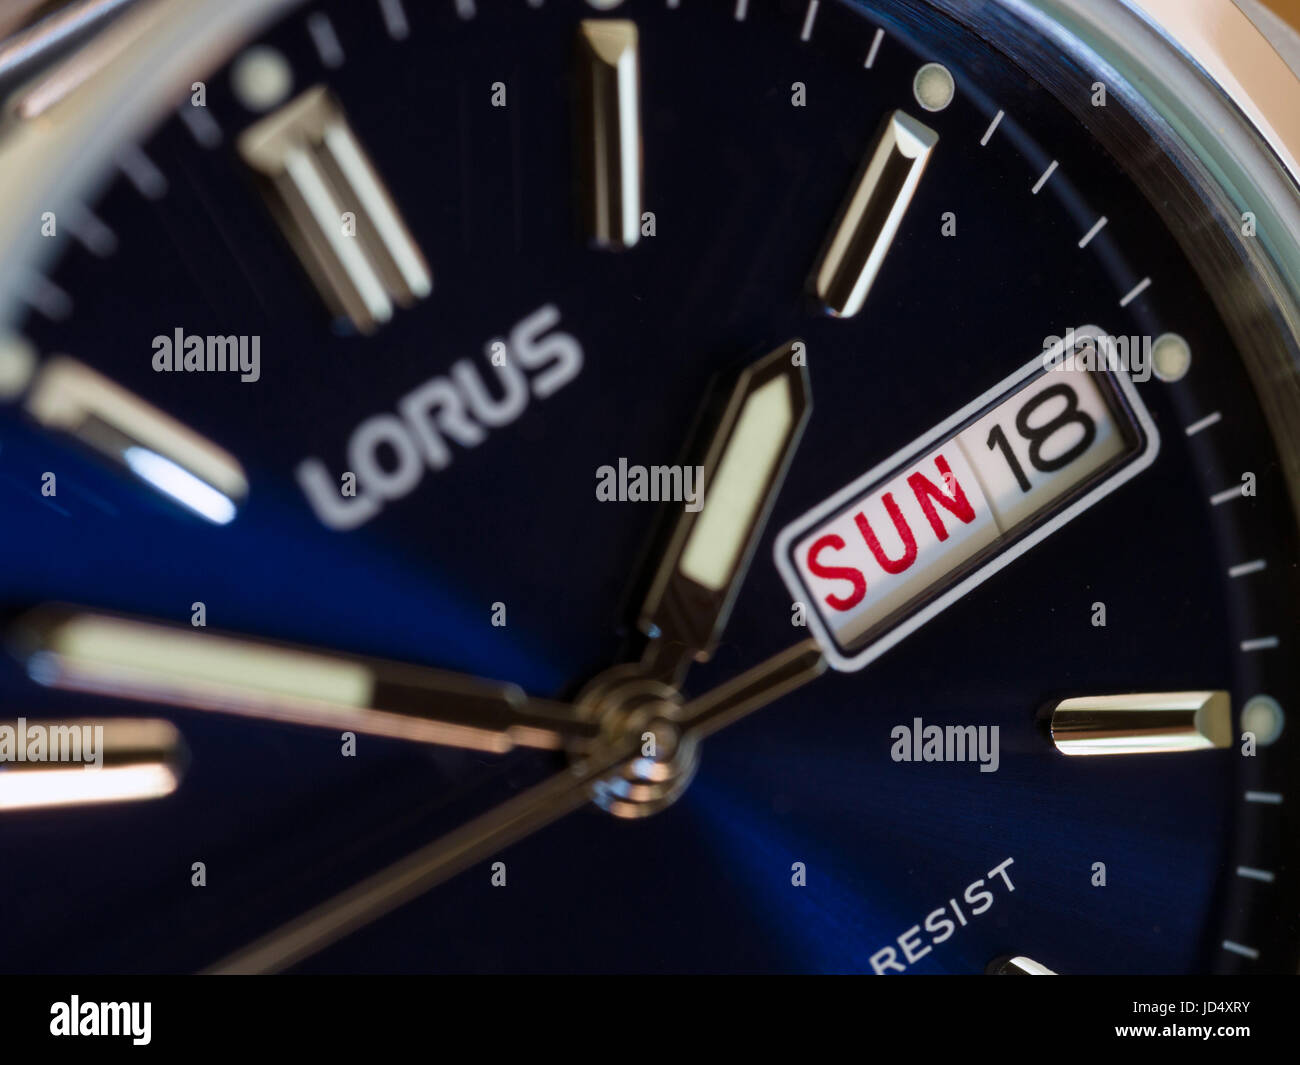 Uomini Lorus orologio analogico, guarda con profondo blu del volto, giorno e data display e cassa in acciaio inossidabile. Foto Stock